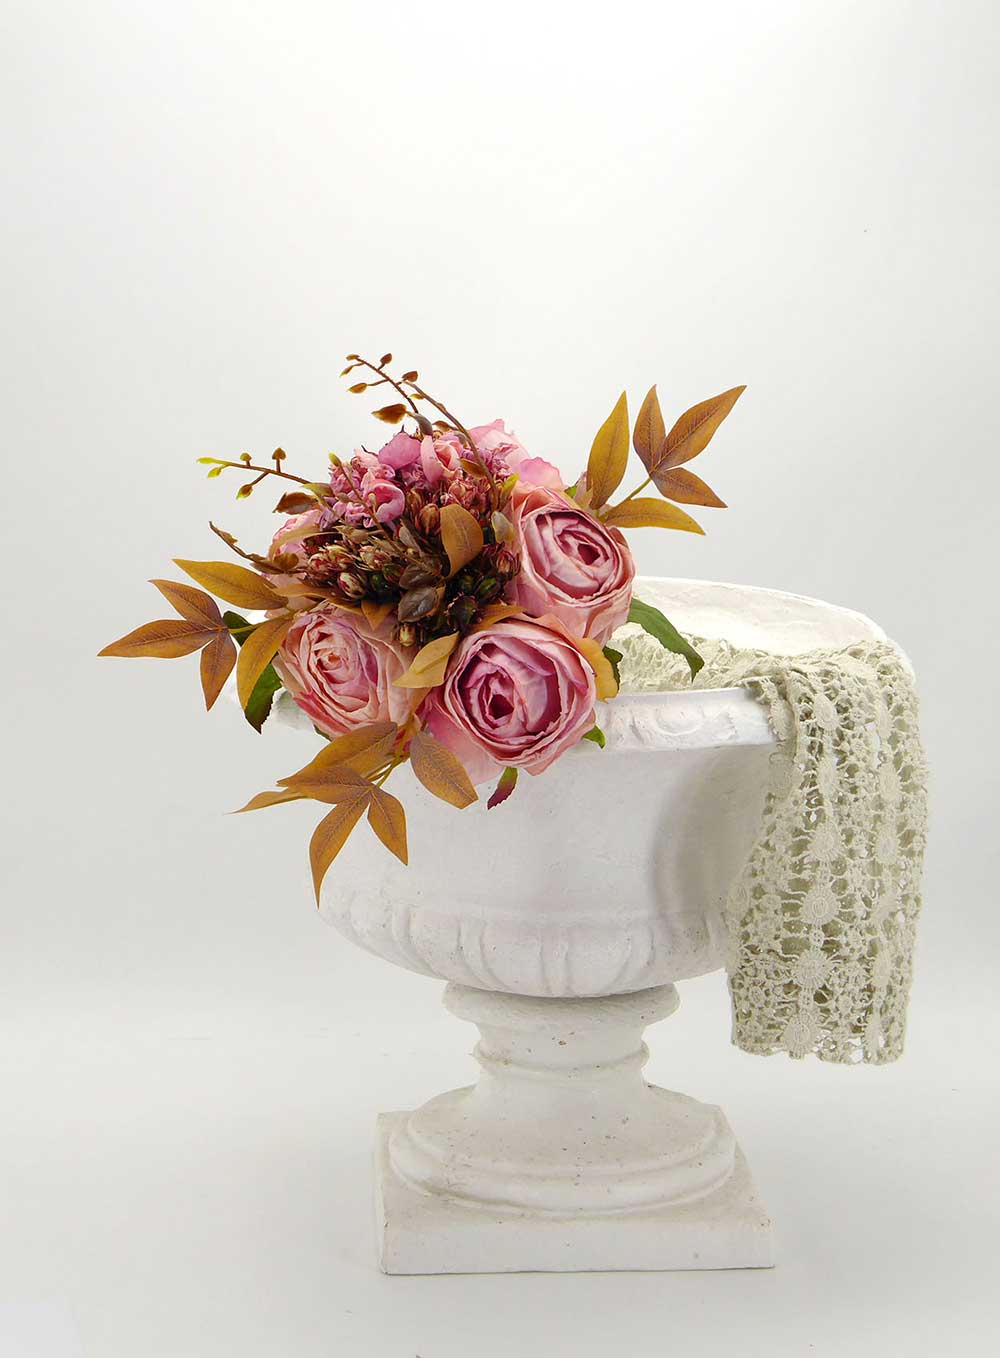 Bouquet 5 Rose Artificiali in Seta Stile Shabby Chic Colore Rosa